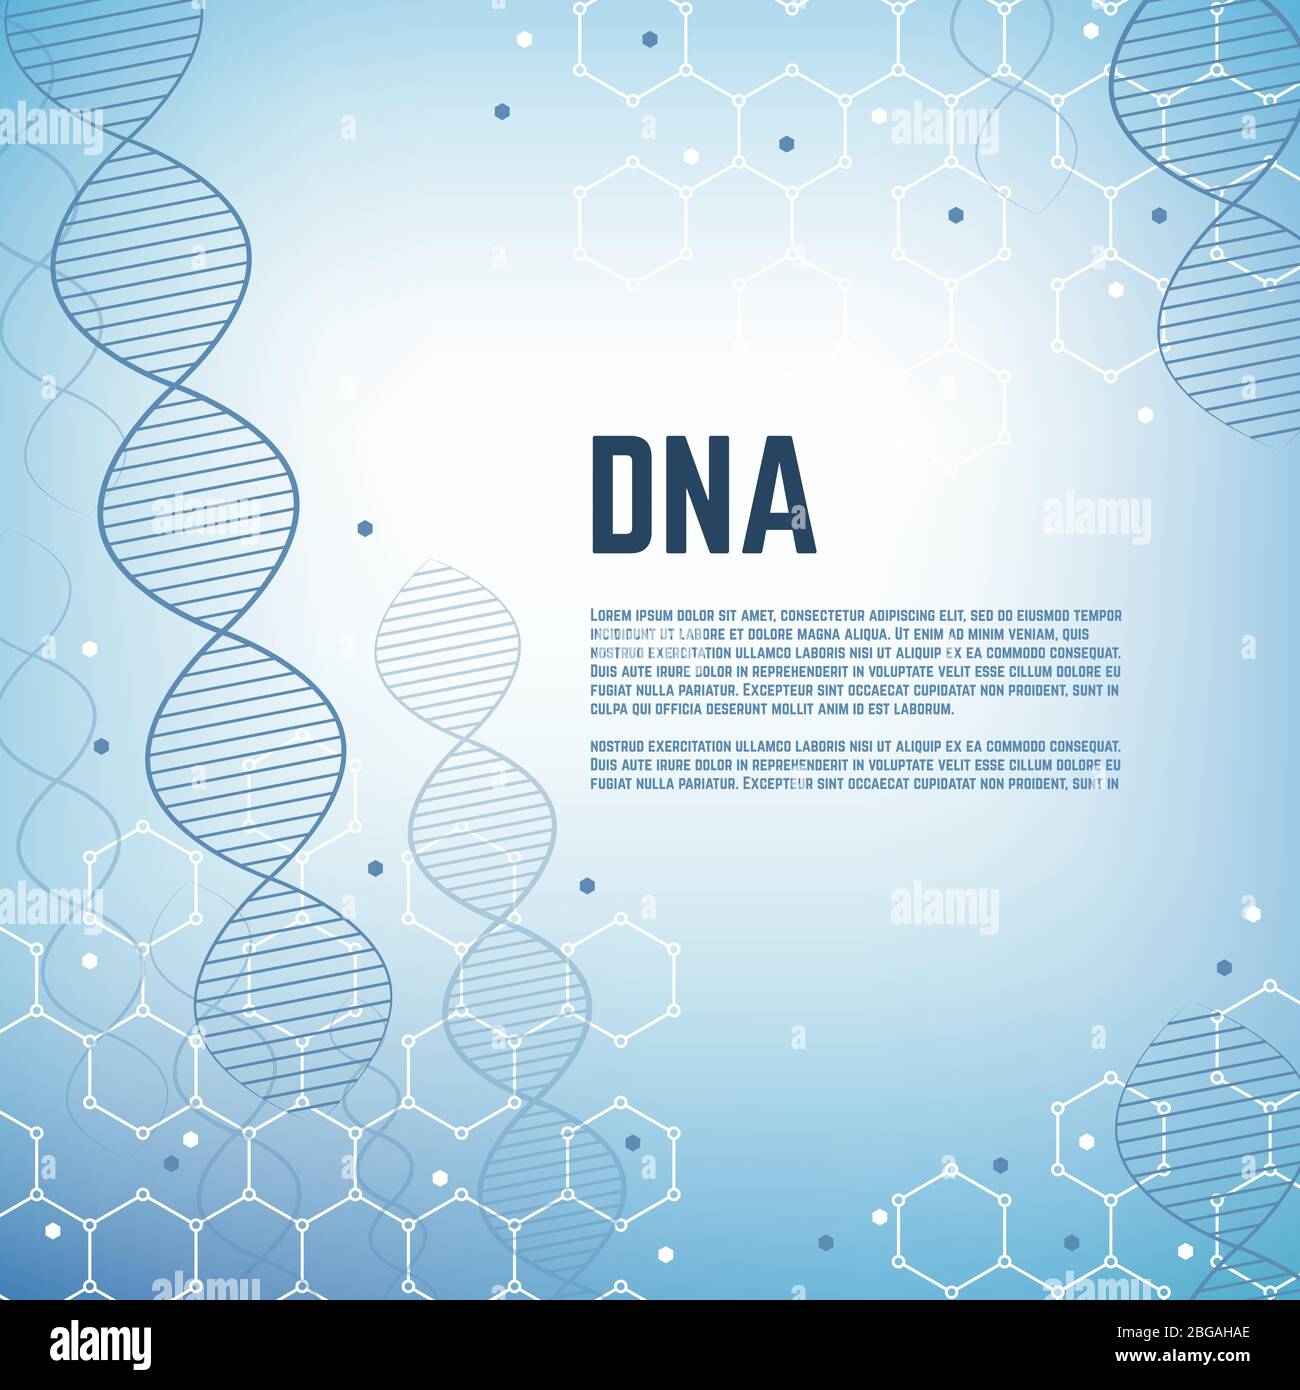 Resumen genética ciencia vector antecedentes con adn humano cromosoma modelo de molécula. Ilustración molecular de la bandera del modelo de ADN, la célula y el cromosoma Ilustración del Vector